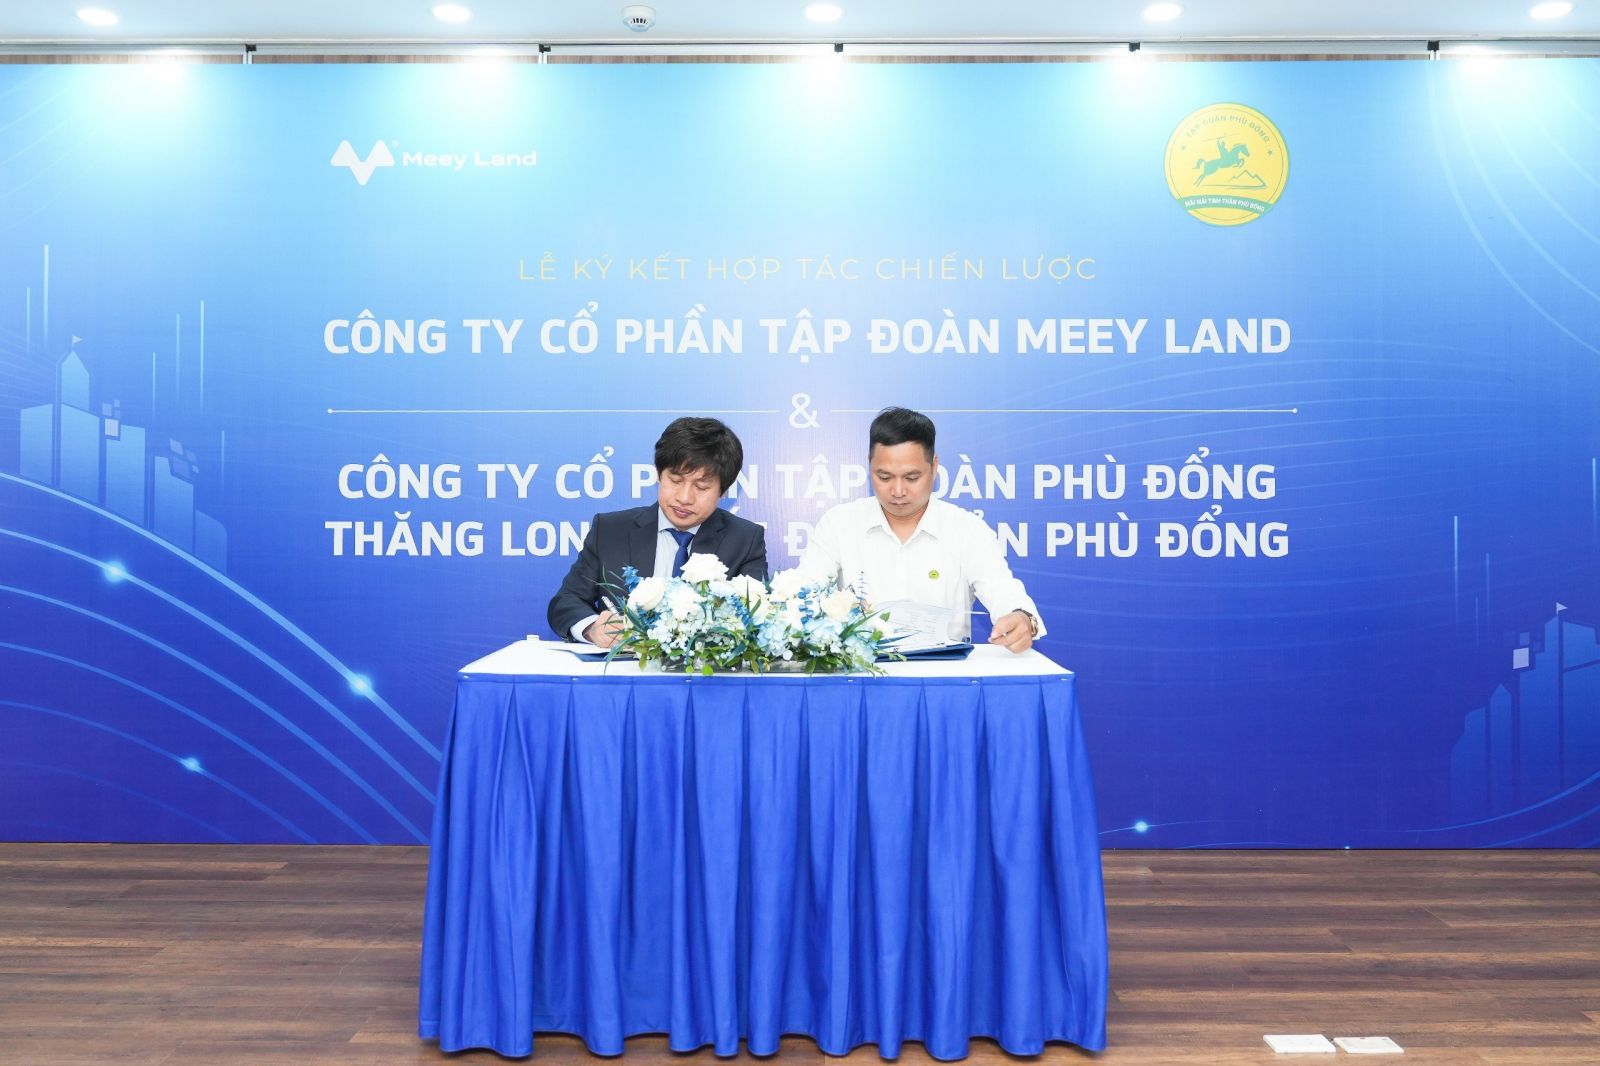 Lễ ký kết hợp tác chiến lược giữa Meey Land và Bất động sản Phù Đổng